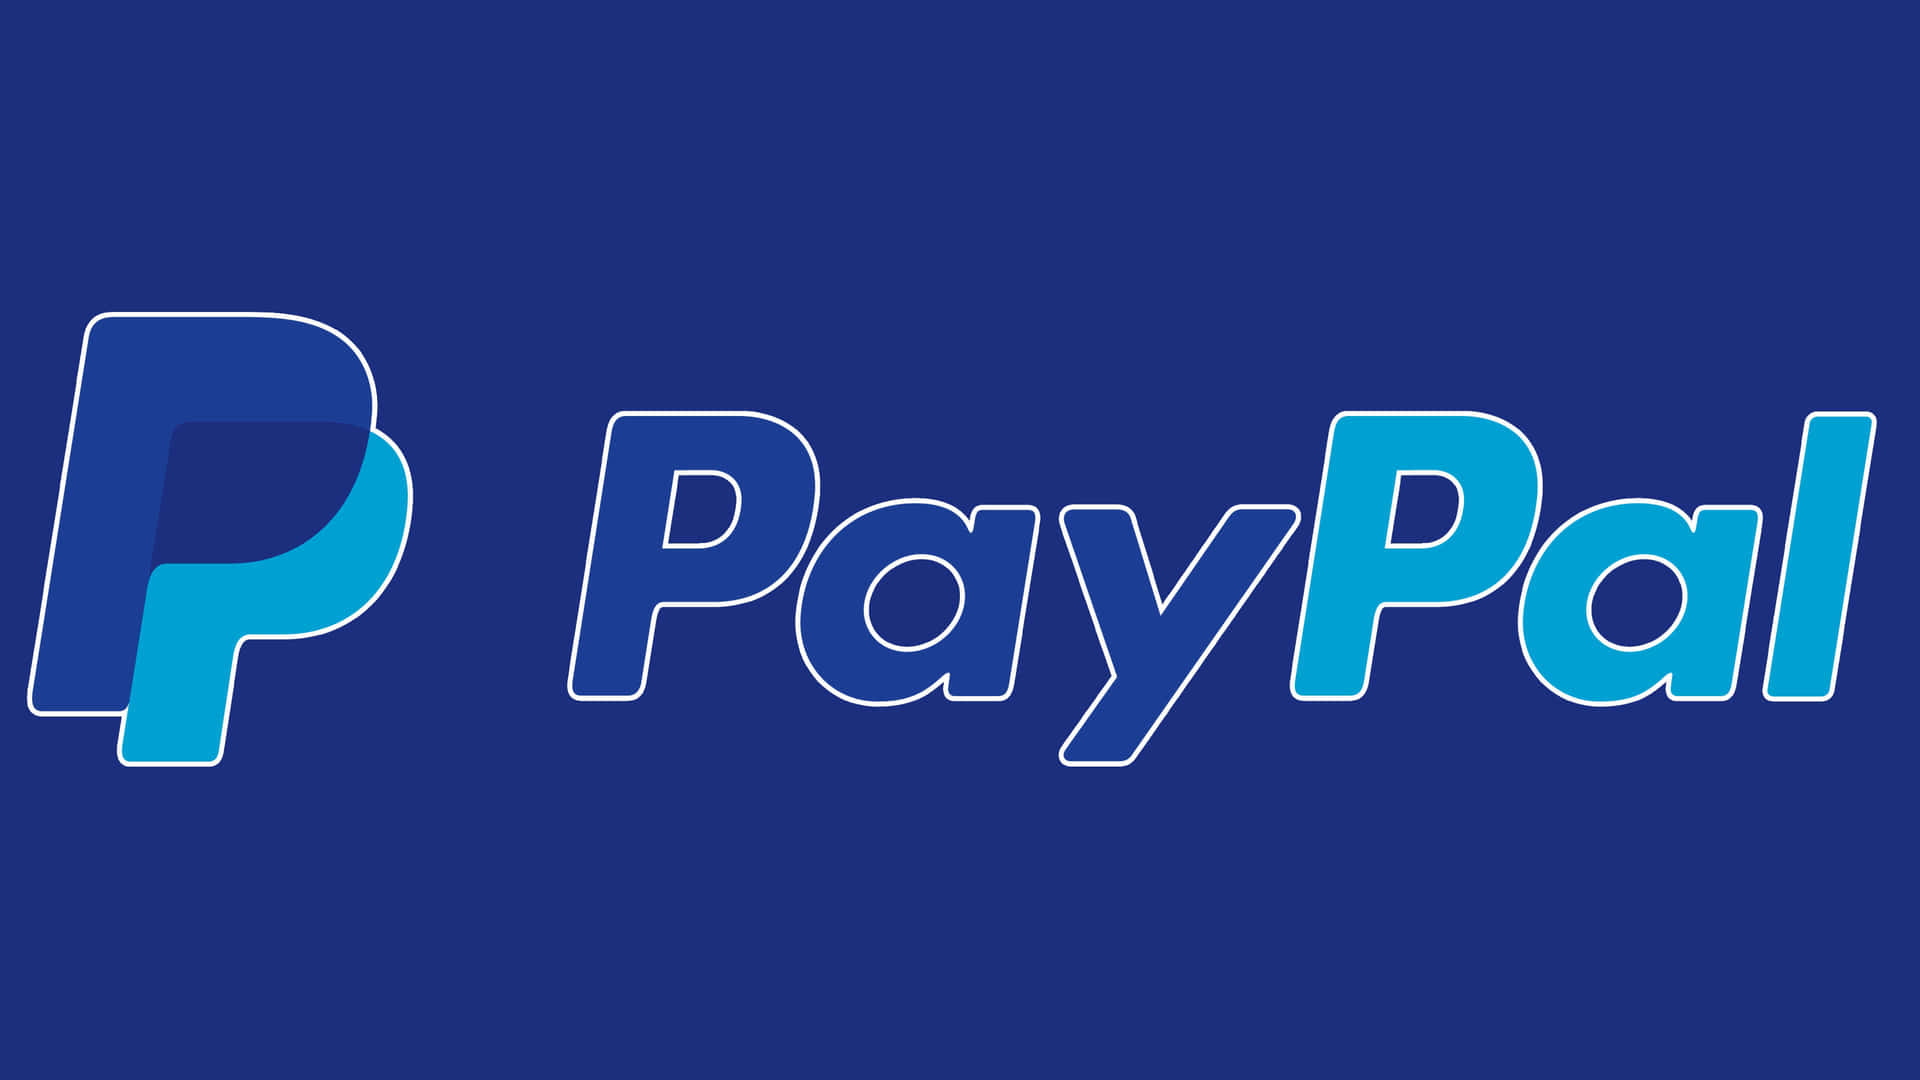 Paypalhilft Ihnen Dabei, Ihre Geldtransaktionen Sicher Zu Handhaben.